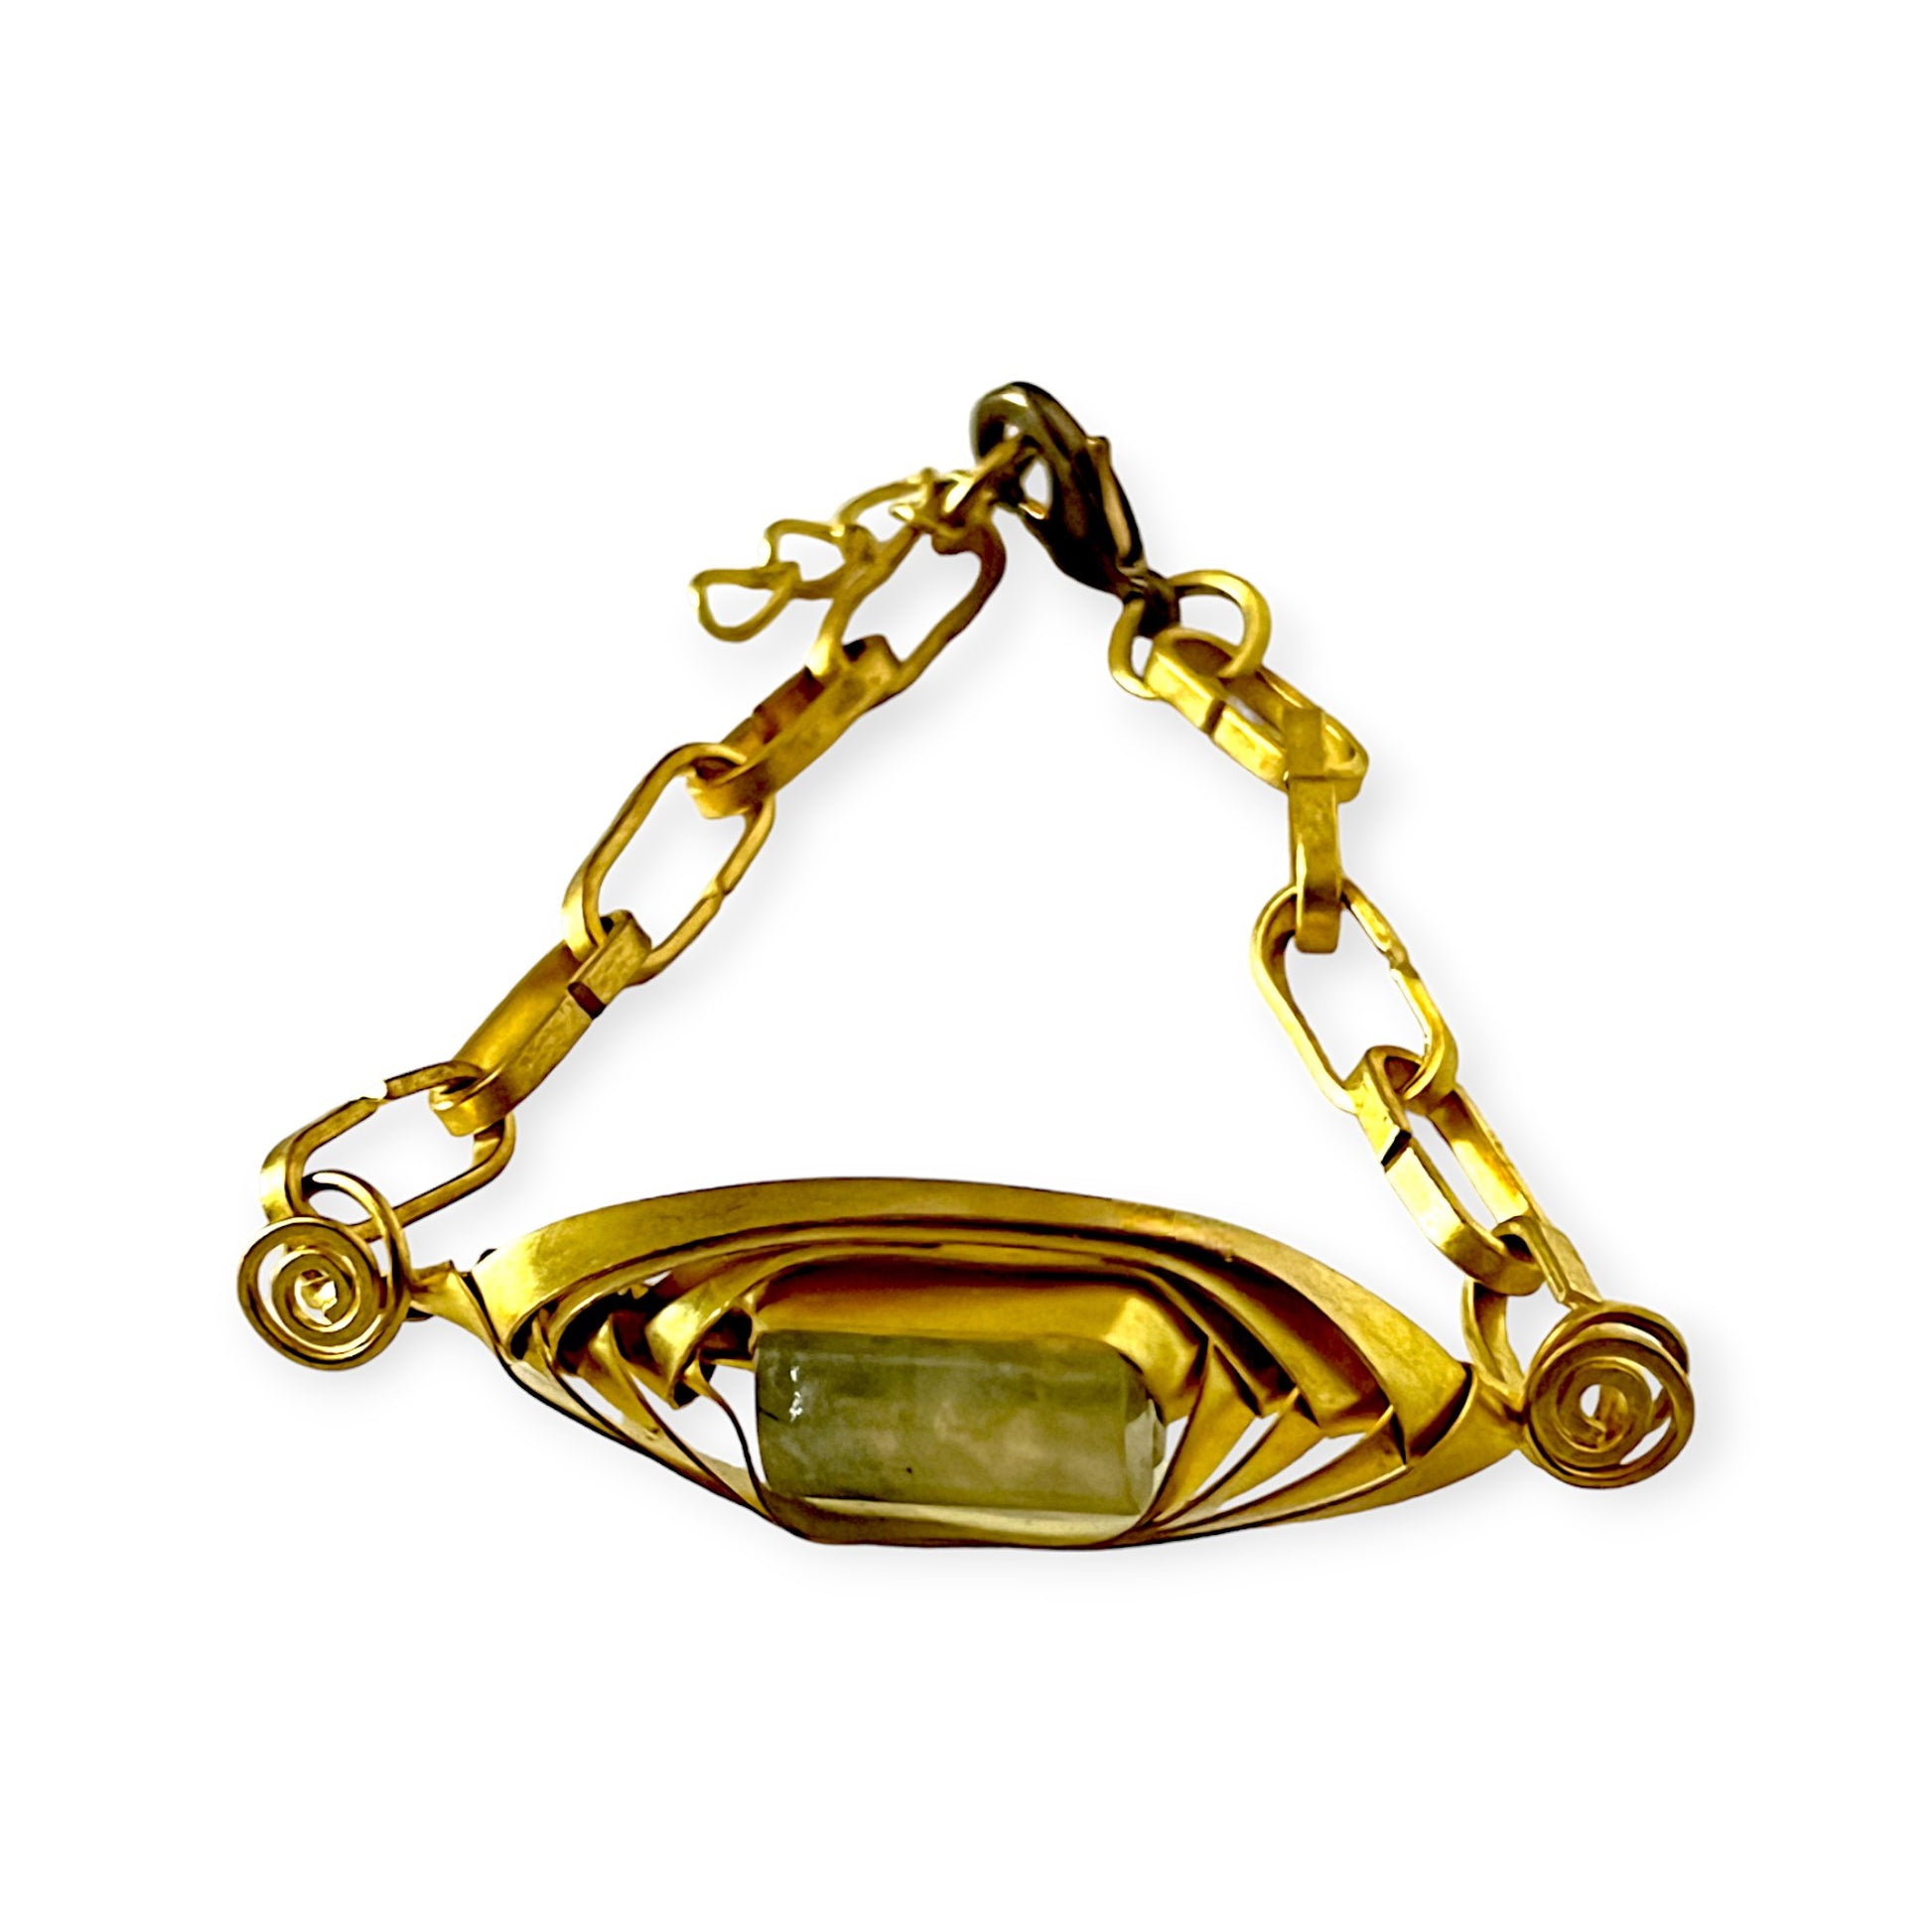 Art deco inspired chainlink bracelet - Sundara Joon